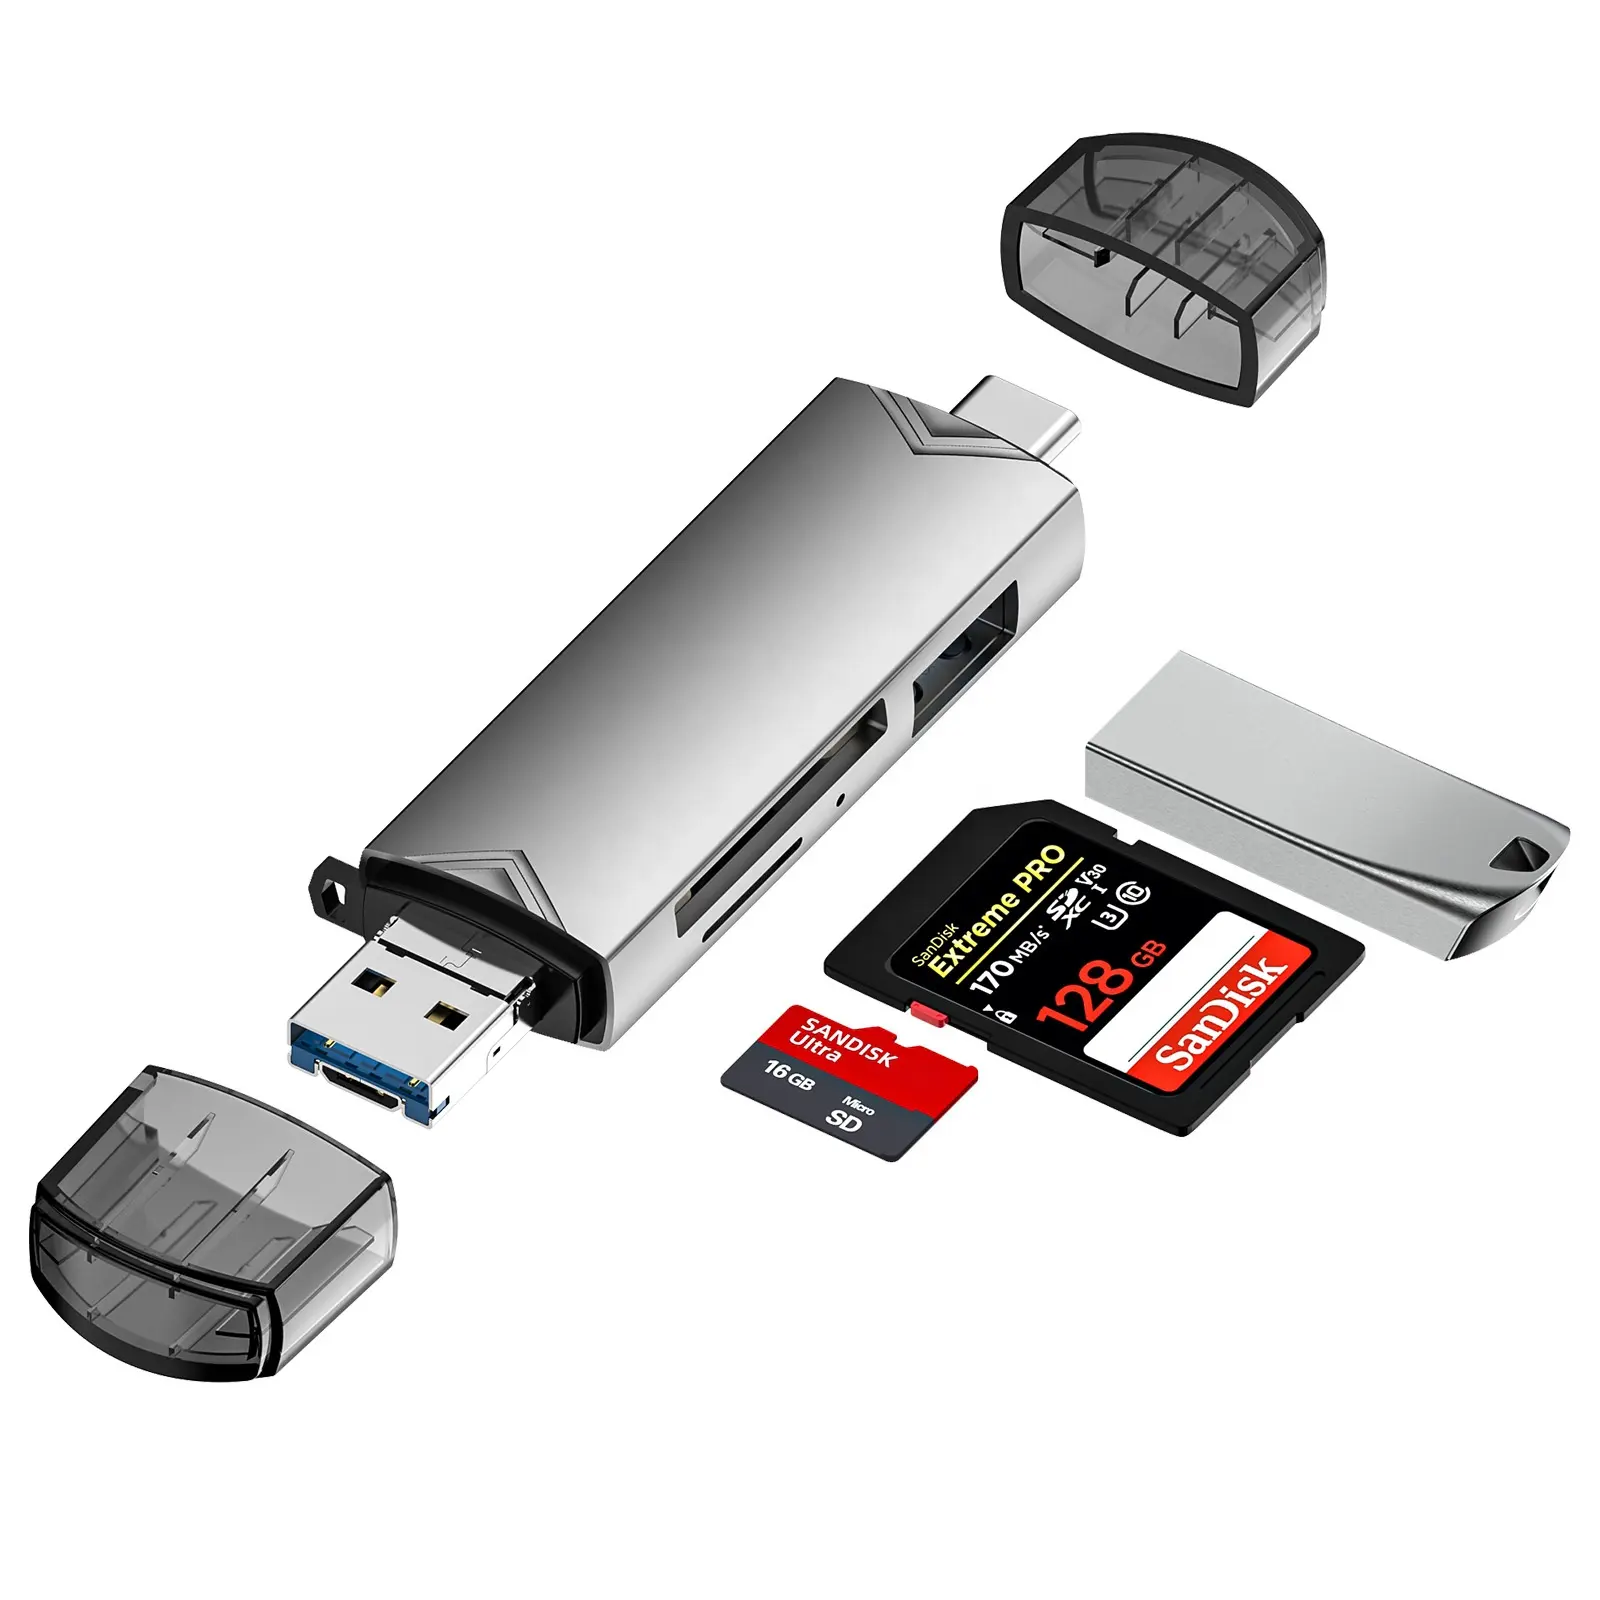 6 in 2 USB 3.0 e Micro USB e lettore di schede OTG USB TF e SD di tipo C per PC mobili e Notebook e altro ancora